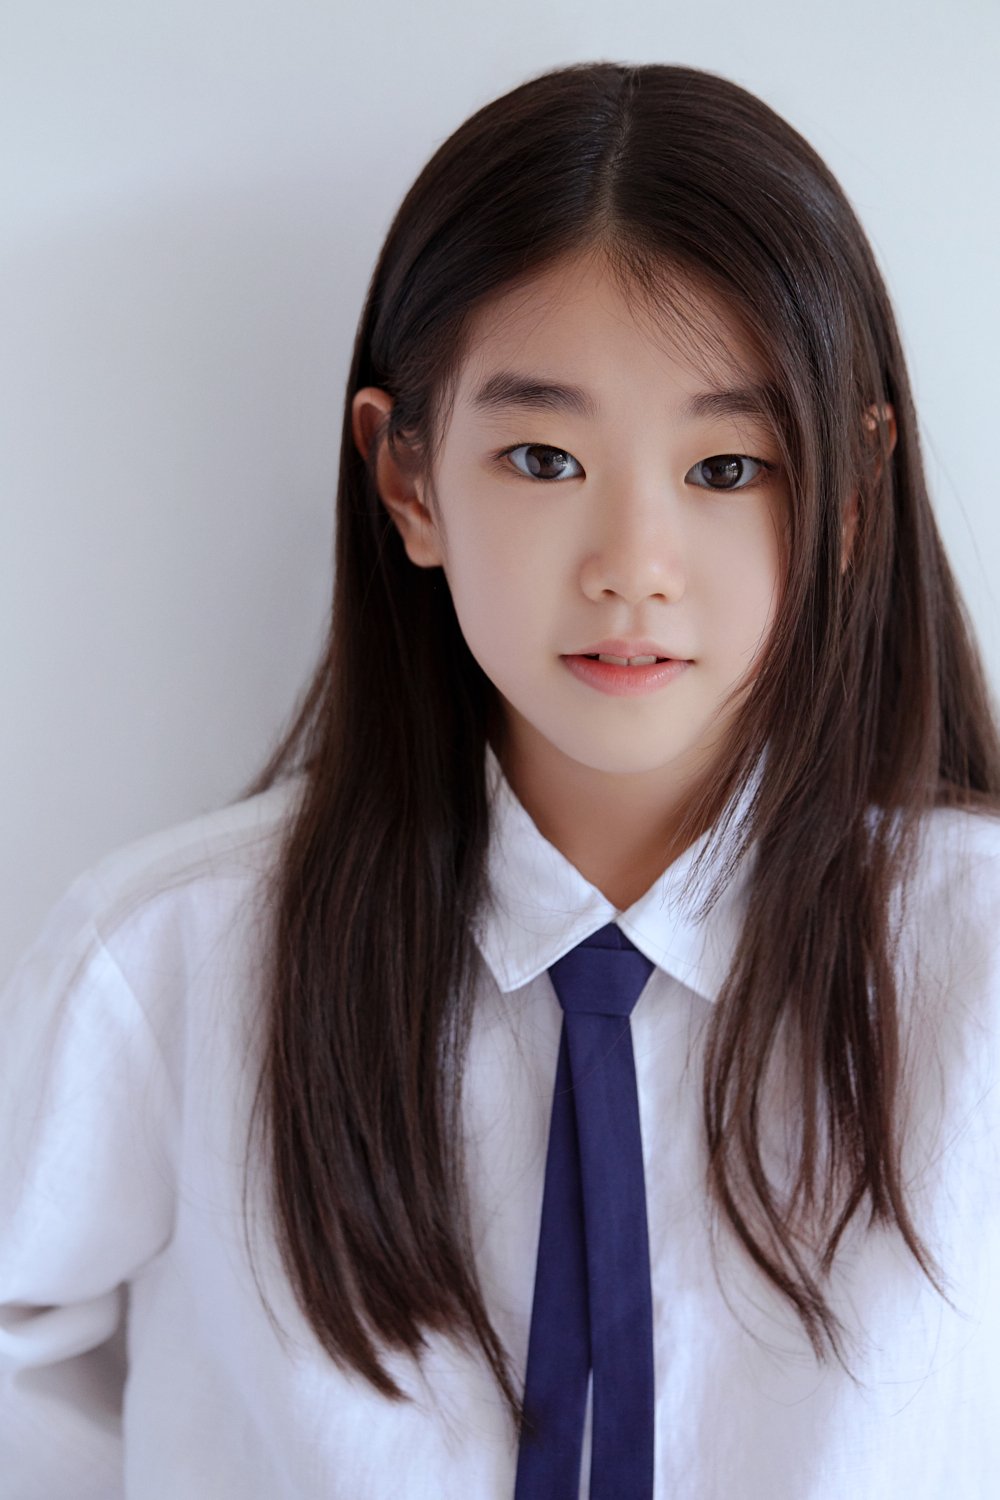 Sao nhí 9 tuổi được kỳ vọng tại làng phim ảnh Hàn